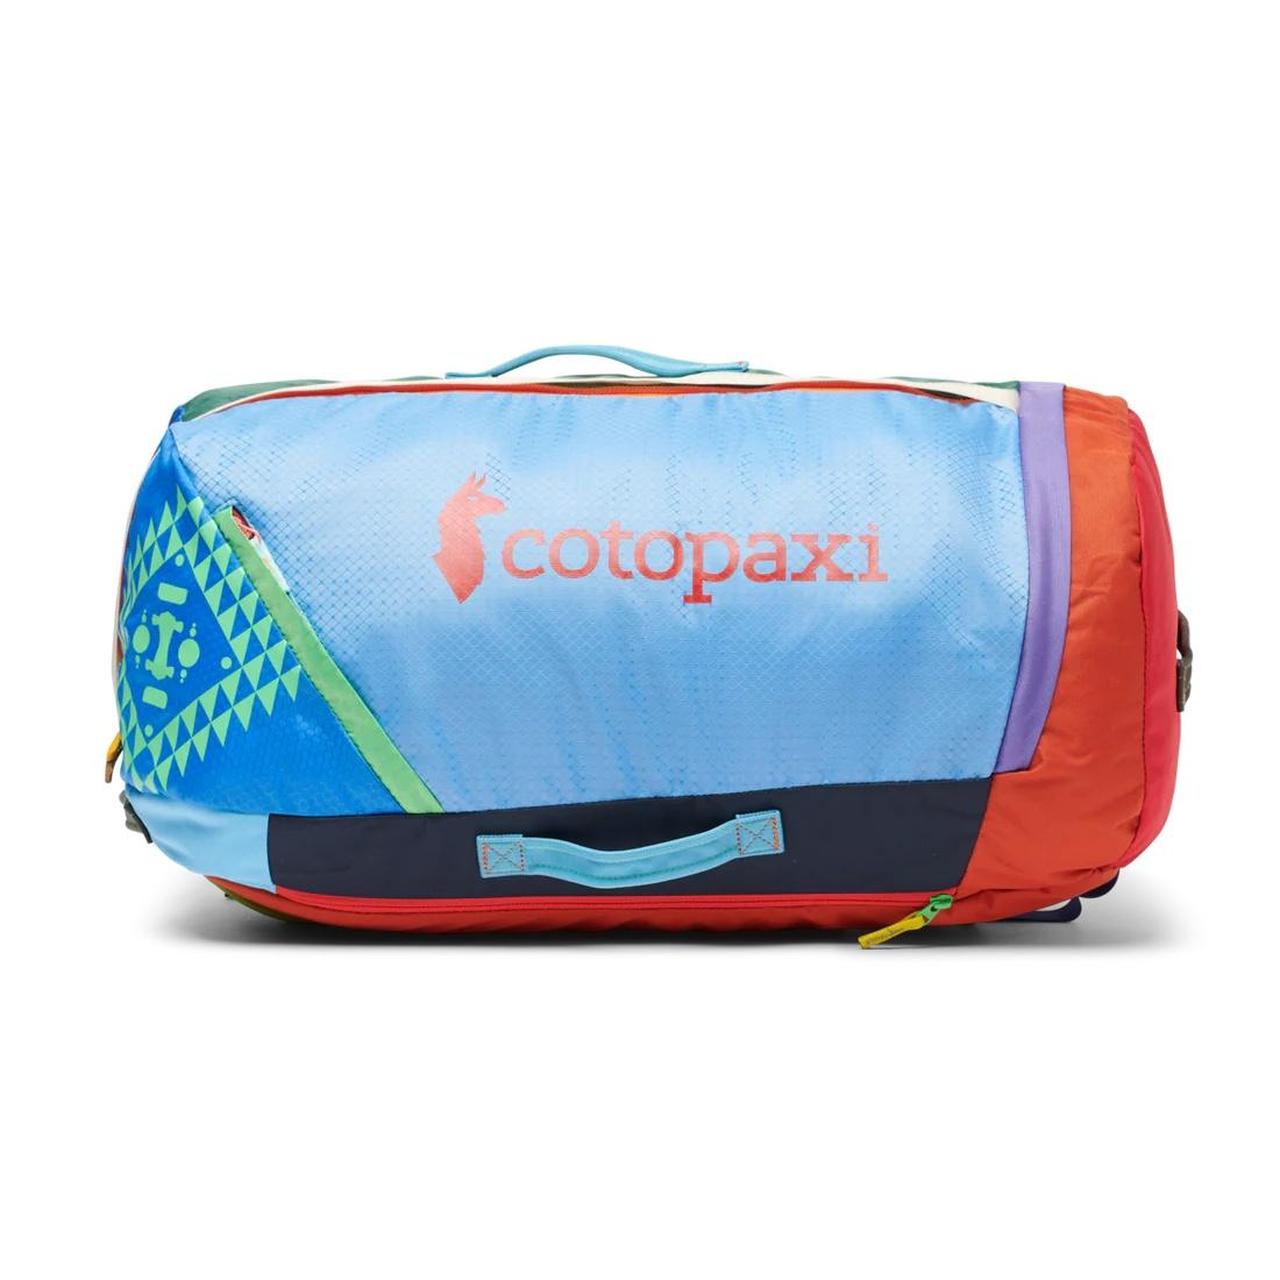 Cotopaxi Uyuni 46l Adventure Duffel Bag Del... - Depop